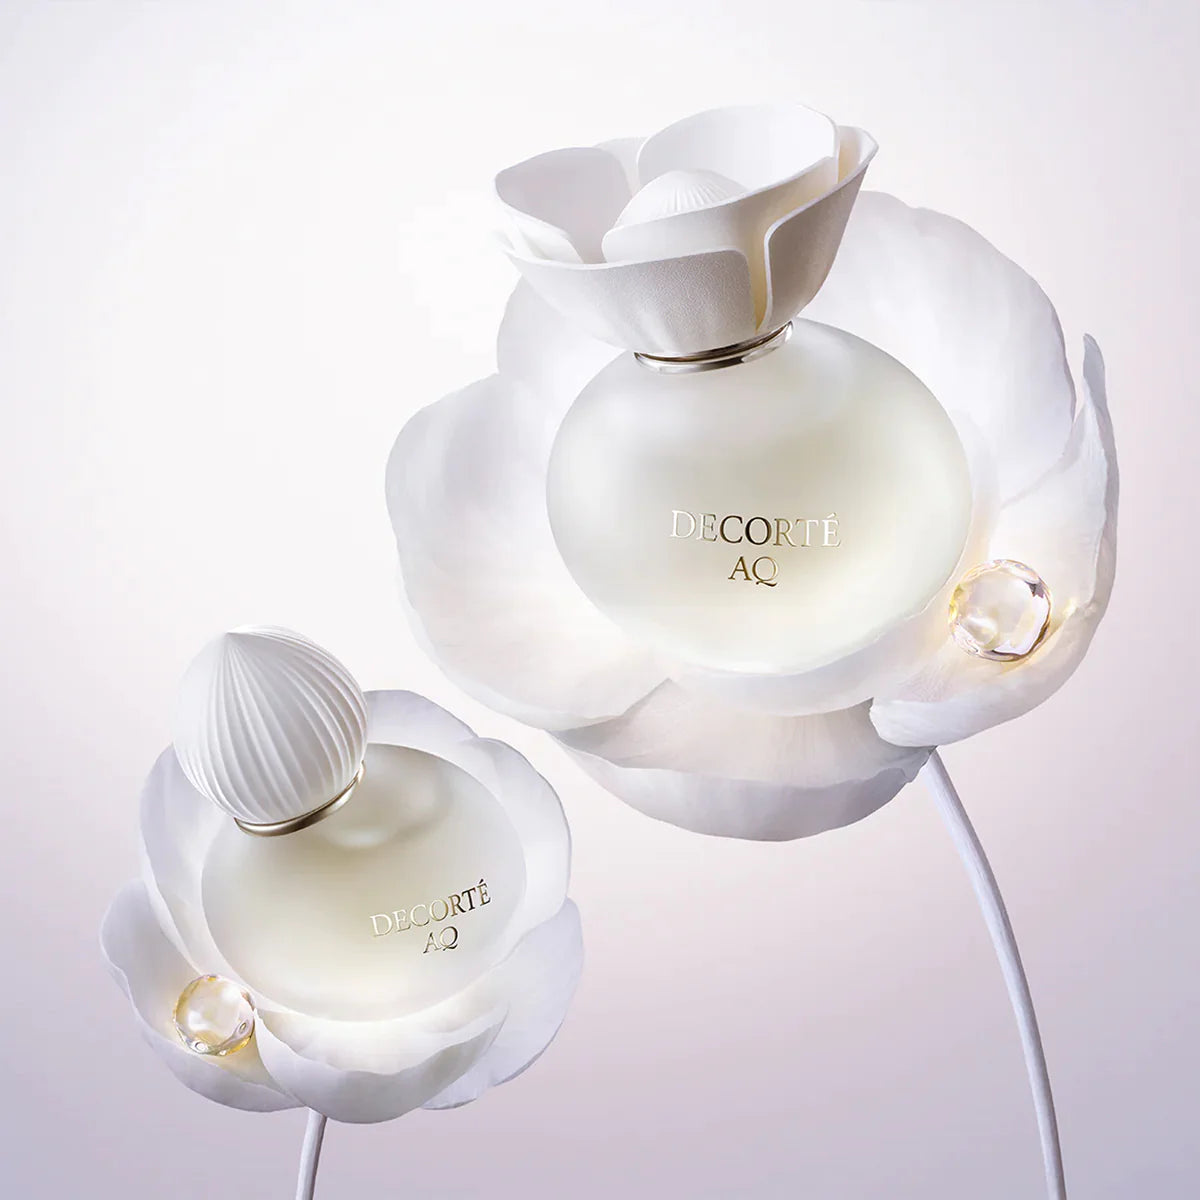 Decorté AQ Eau de Parfum 100 ml